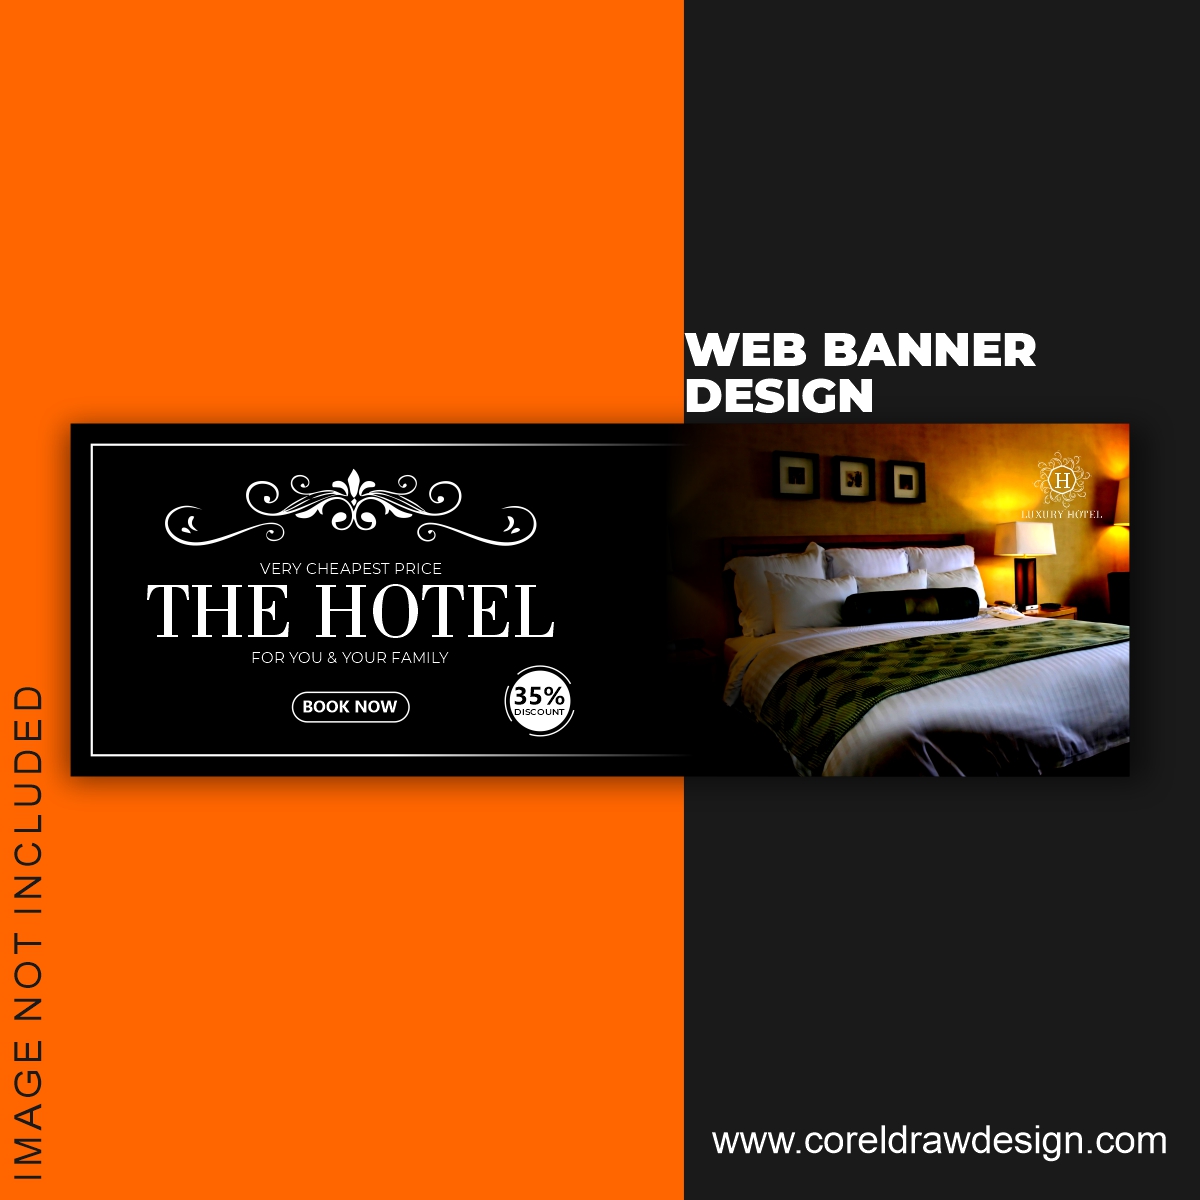 Bạn đang tìm kiếm một thiết kế banner chuyên nghiệp để quảng bá khách sạn của mình? Chúng tôi có thể giúp bạn với một mẫu banner đặt phòng khách sạn độc đáo và thu hút sự chú ý của khách hàng. Hãy xem ngay hình ảnh để chứng kiến sự sáng tạo của chúng tôi.